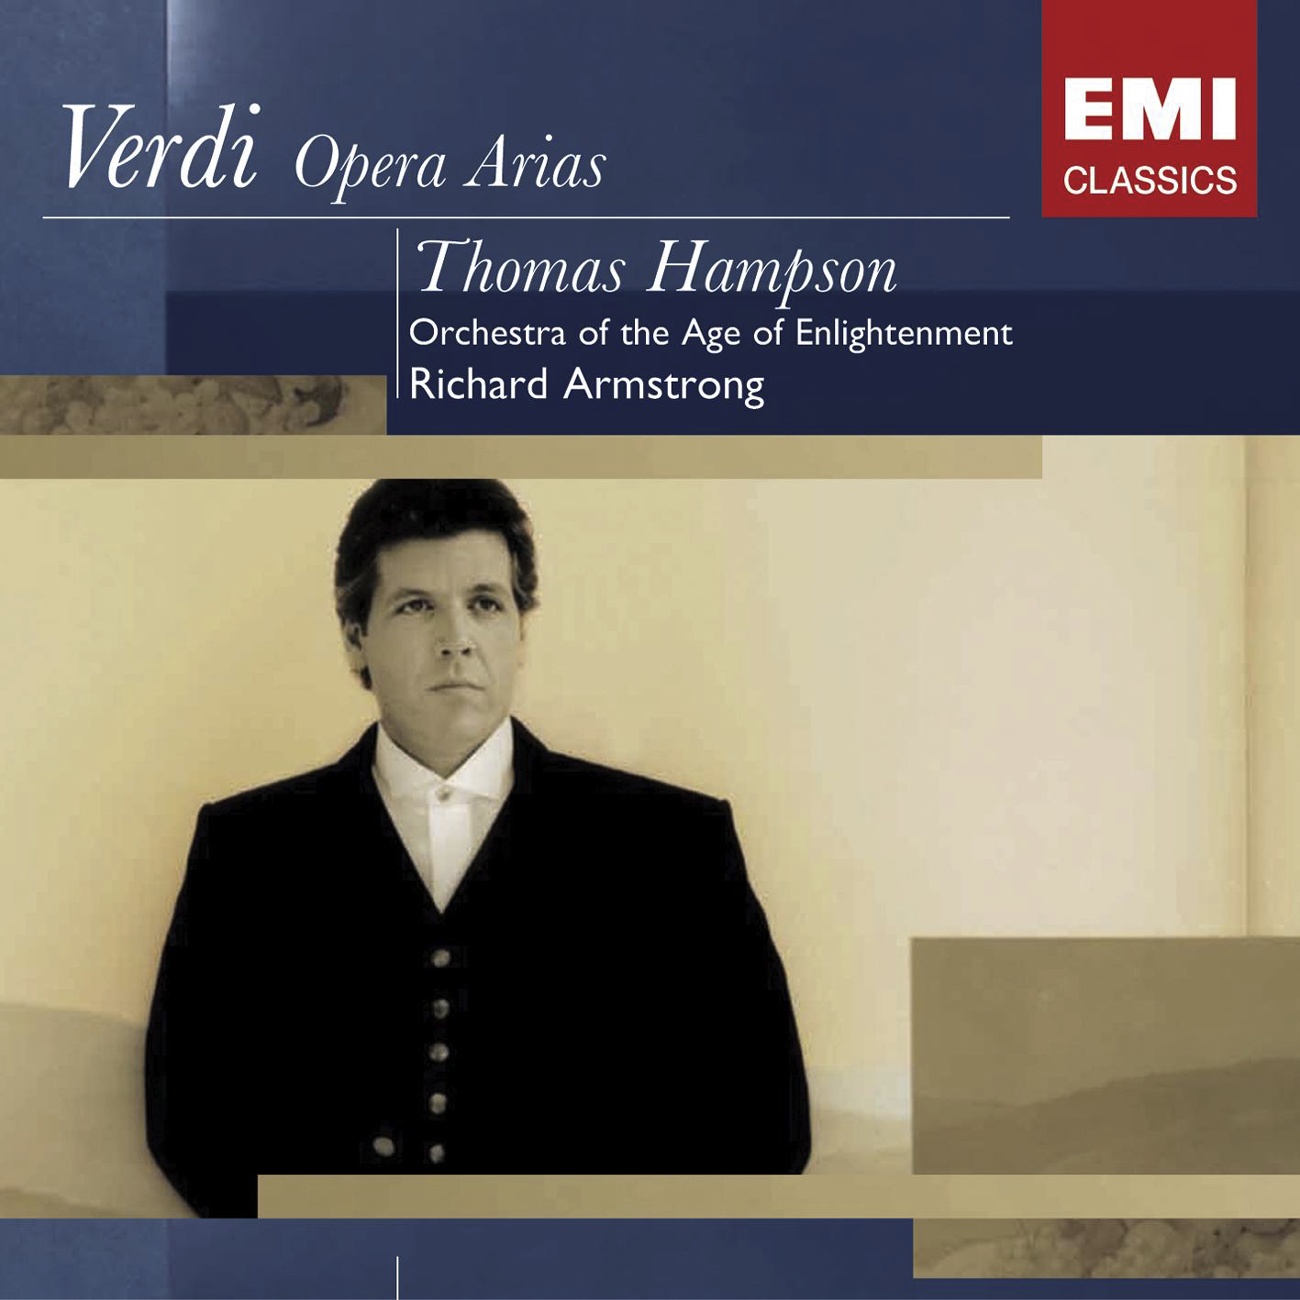 Verdi Operas: Thomas Hampson